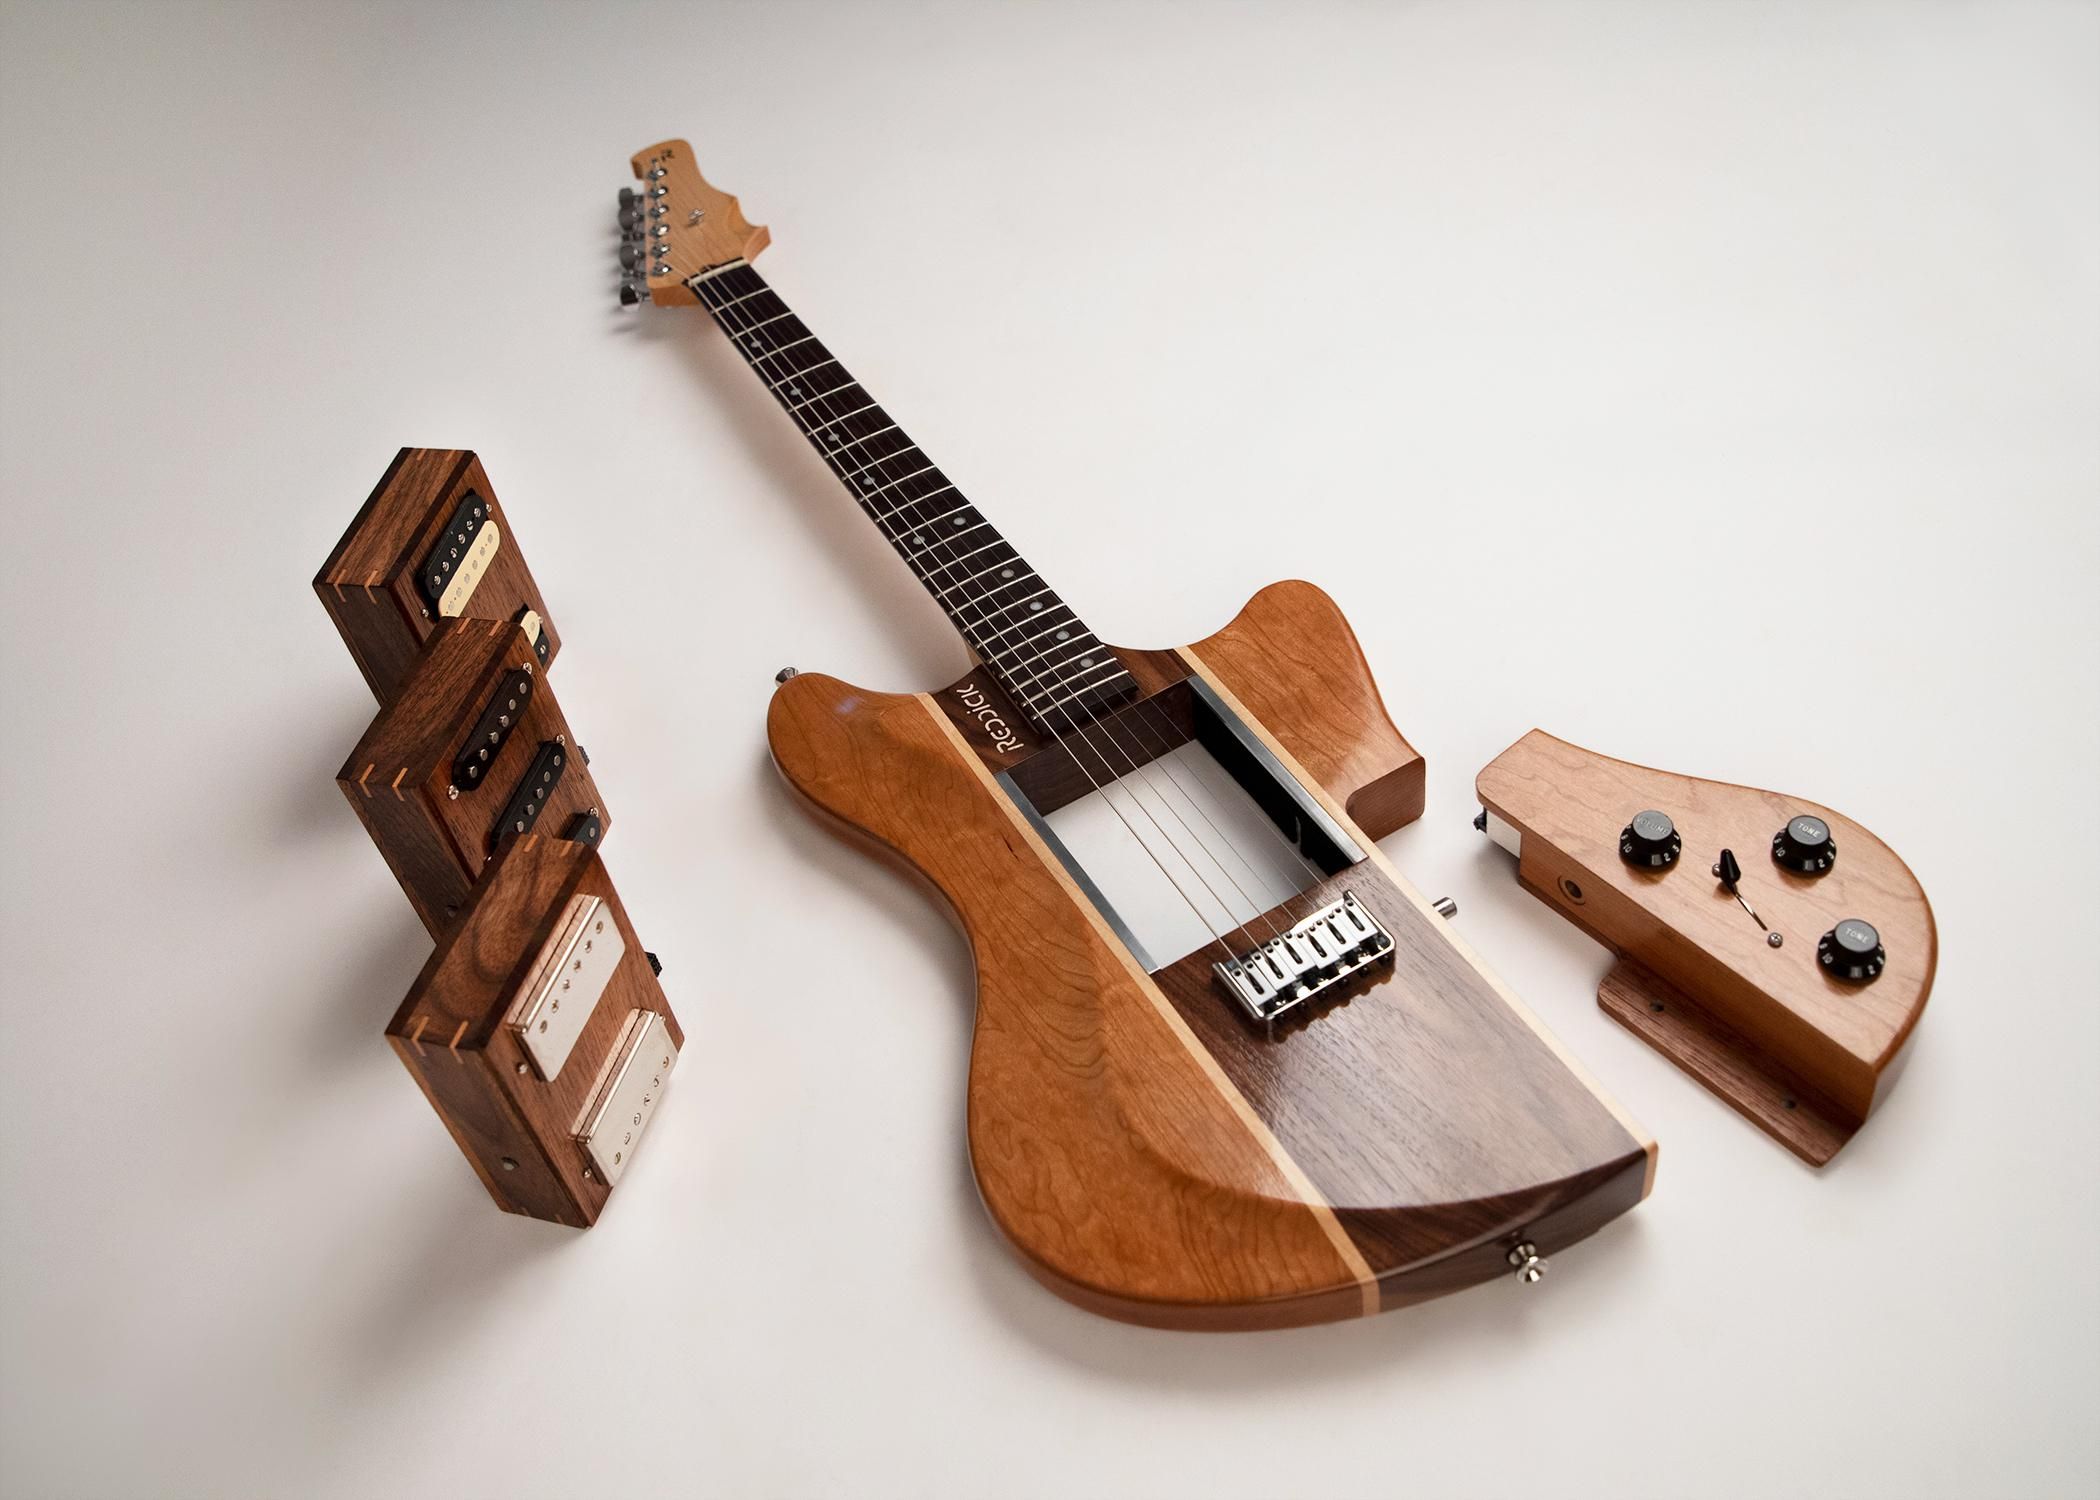 Reddick Guitars Introduces the Voyager Modular Guitar